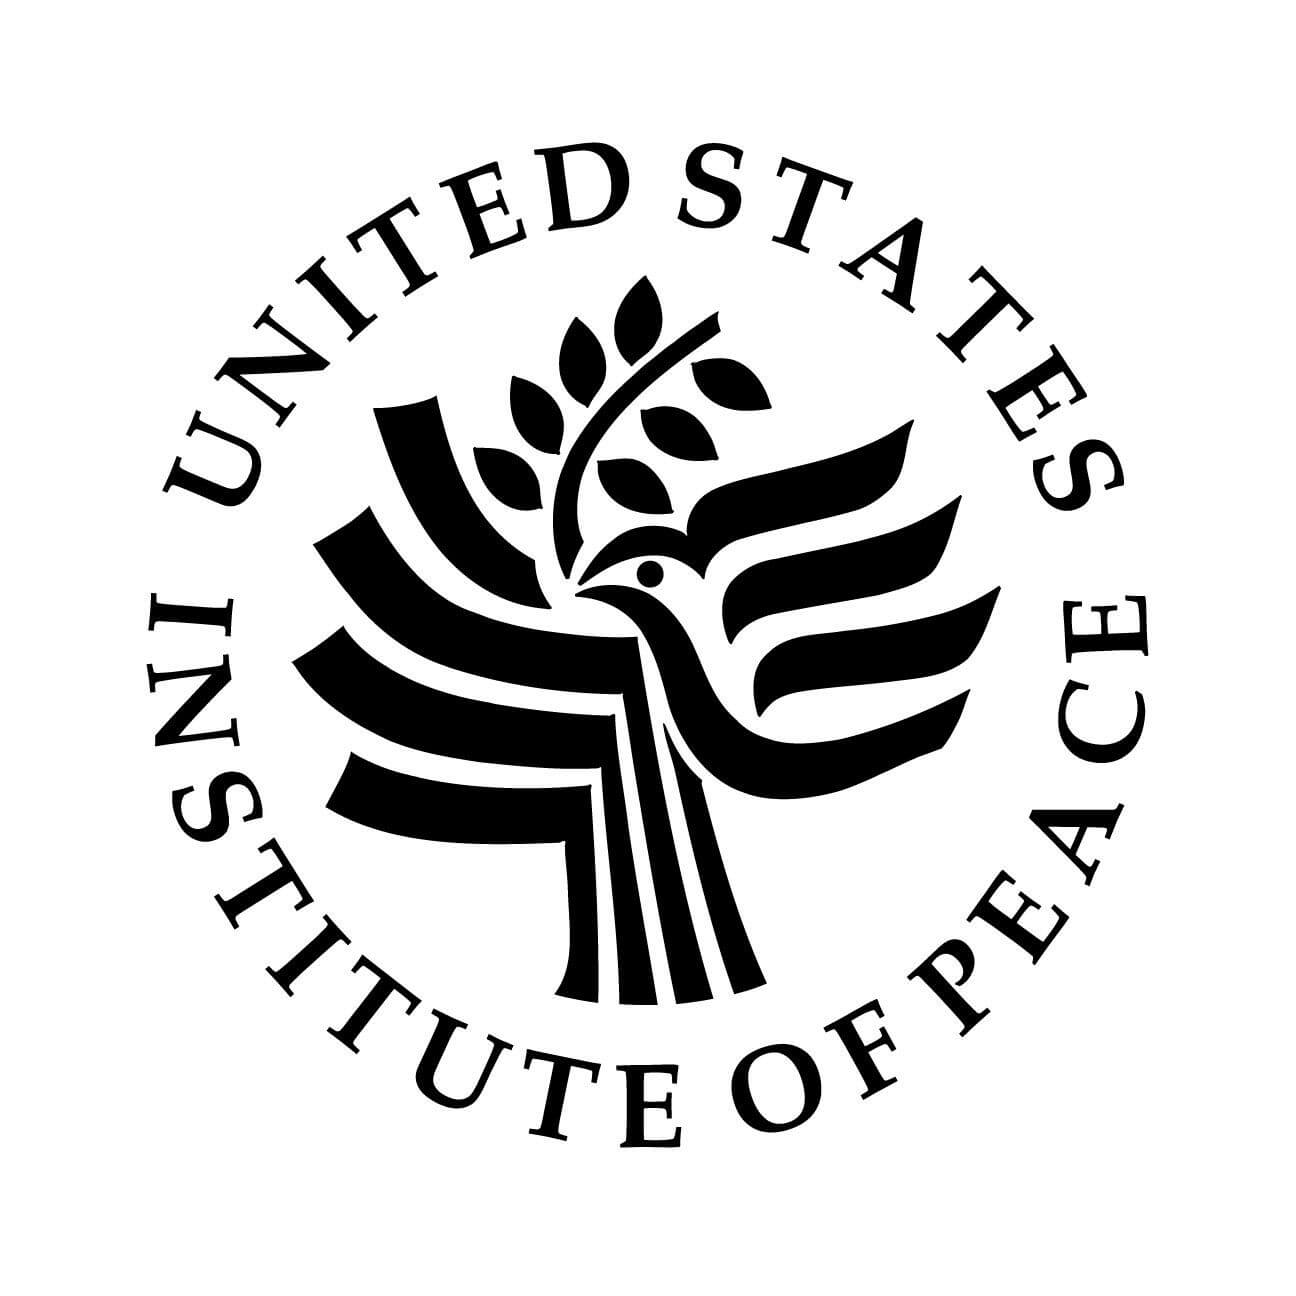 United States Institute of Peace